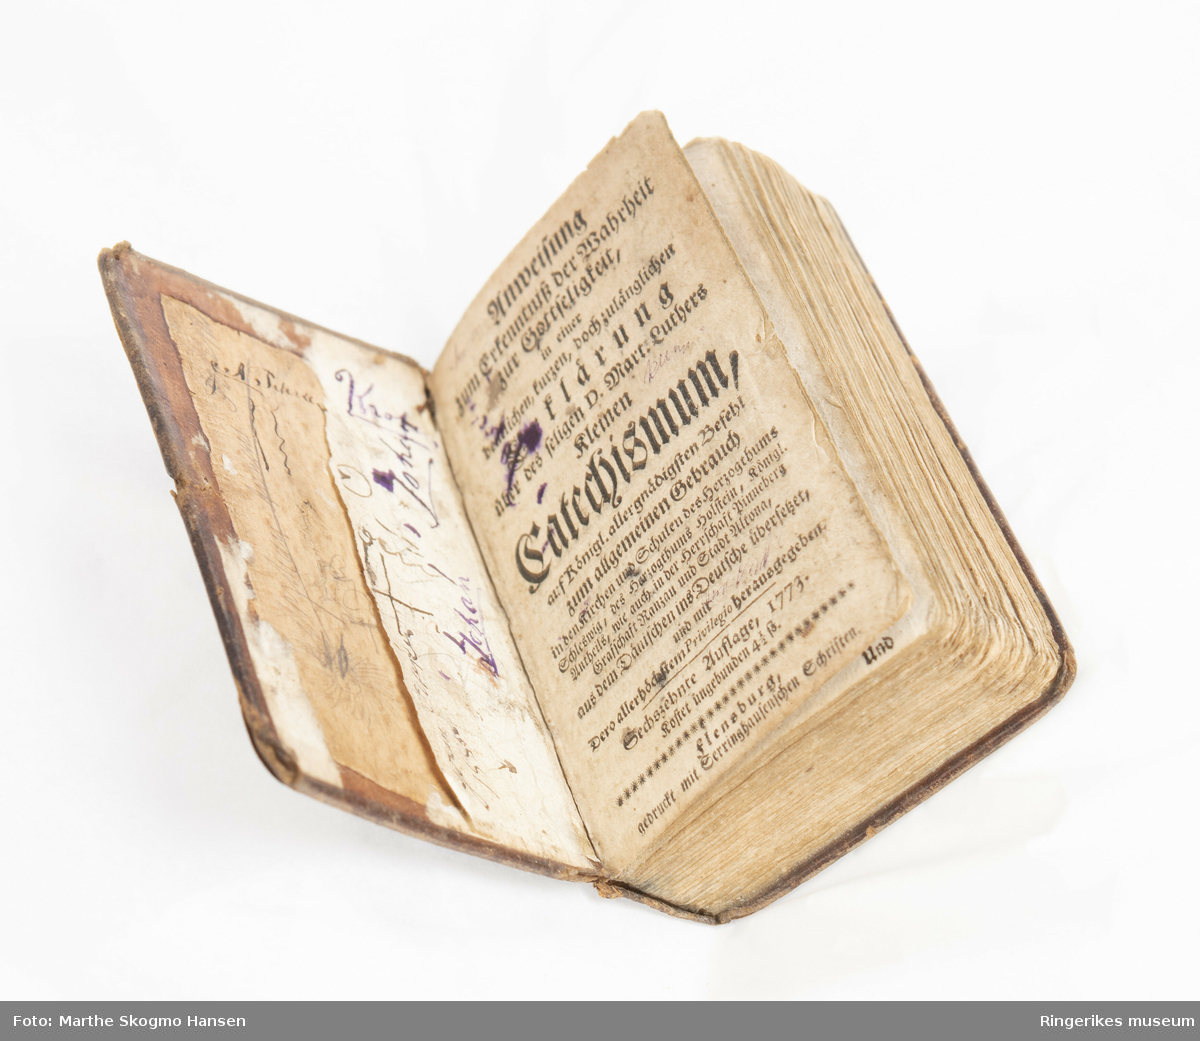 Catechismum. Liten tysk bok med skinnpermer. Martin Luthers lille katekisme. 16 opplag trykket i Flensberg i 1773. Uleselig håndskrift på innsiden av begge permer. Lite trekanta bokmerke inni boka med motiv av ku i gull på rød bakgrunn.